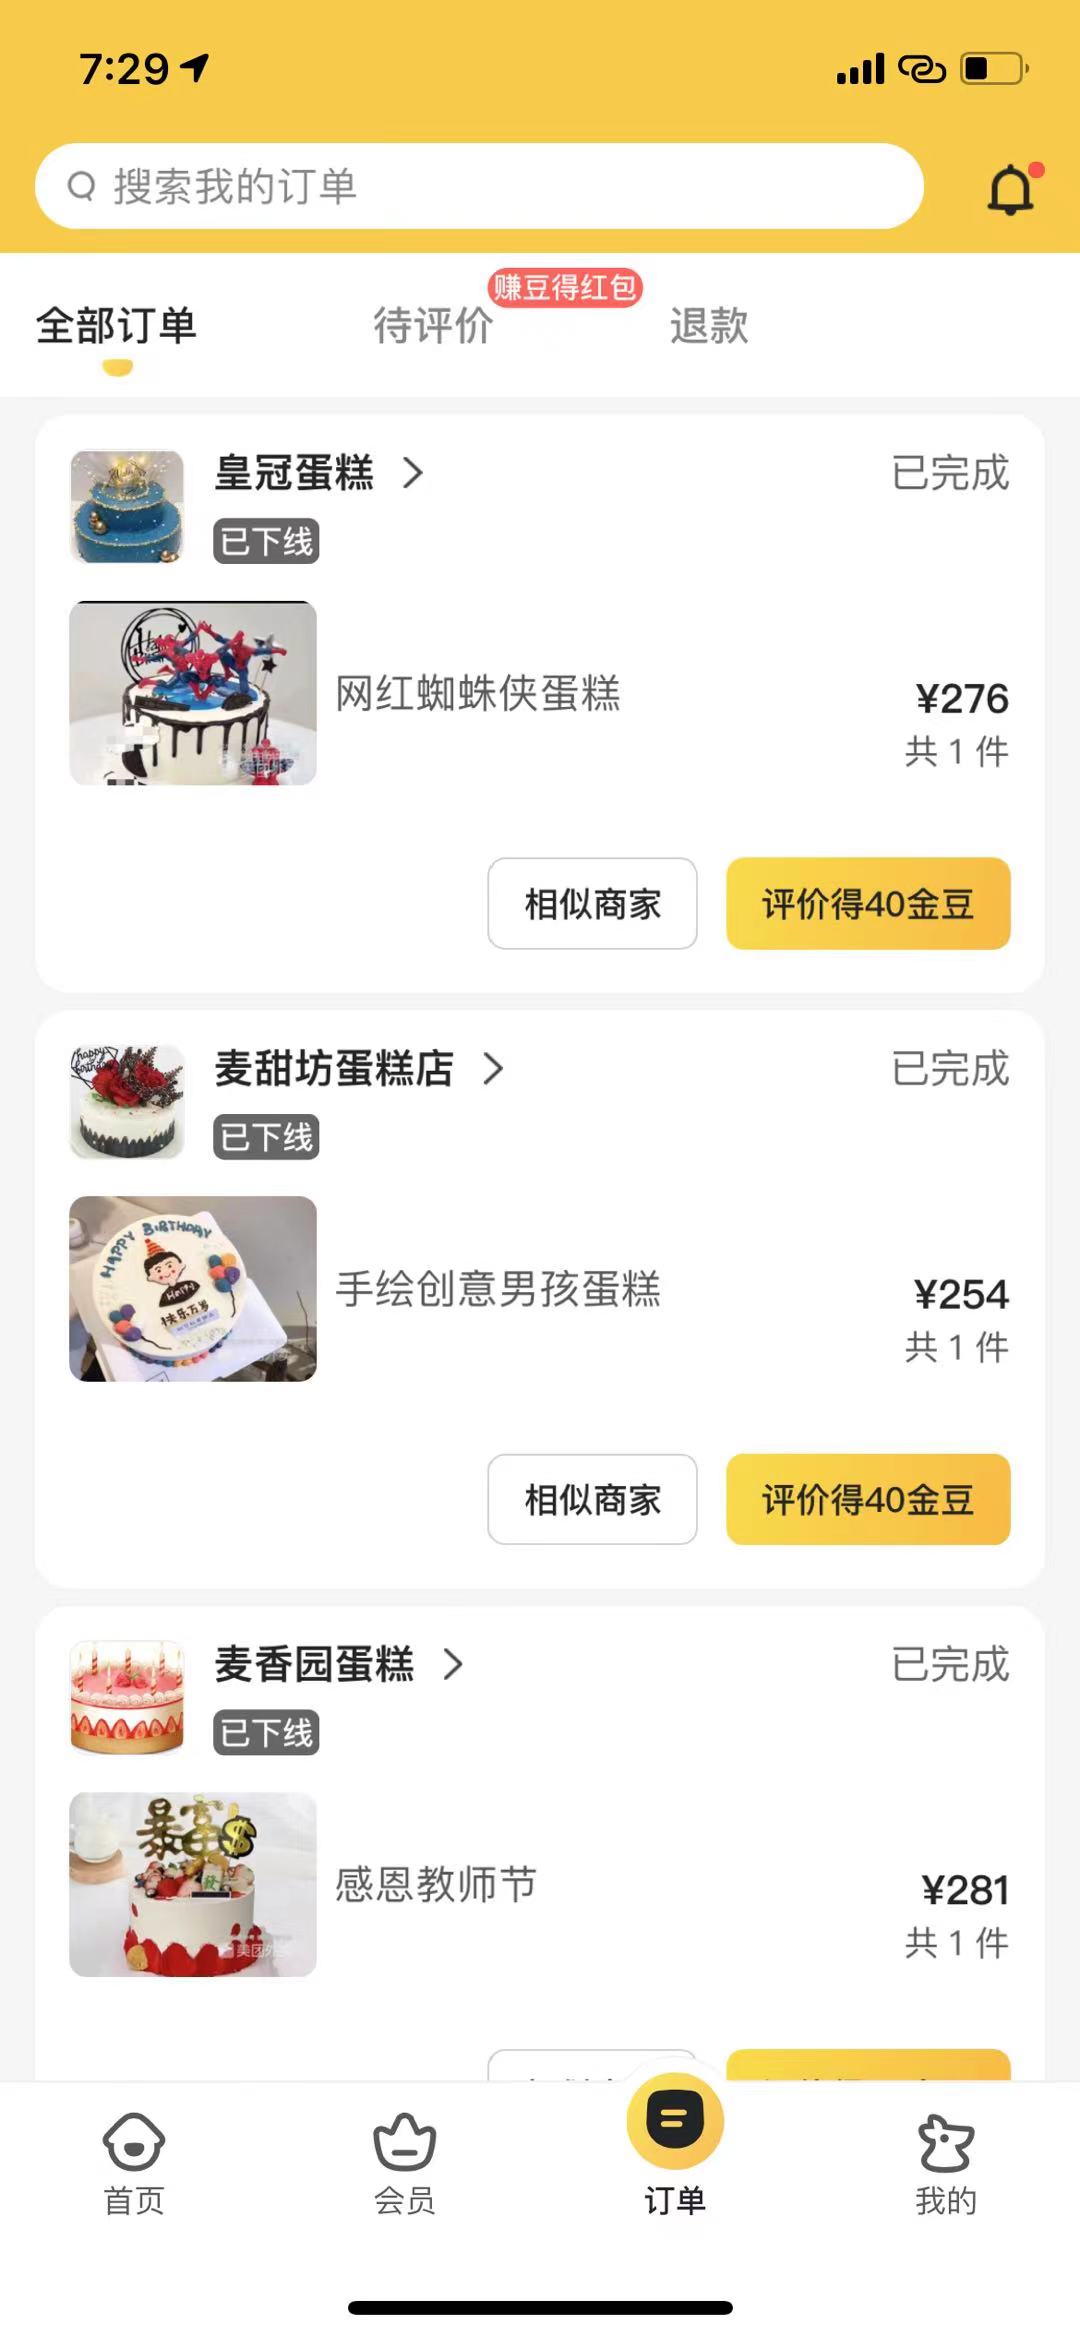 9月16日下午，澎湃新闻注意到，涉事“影子蛋糕店”已被下线。